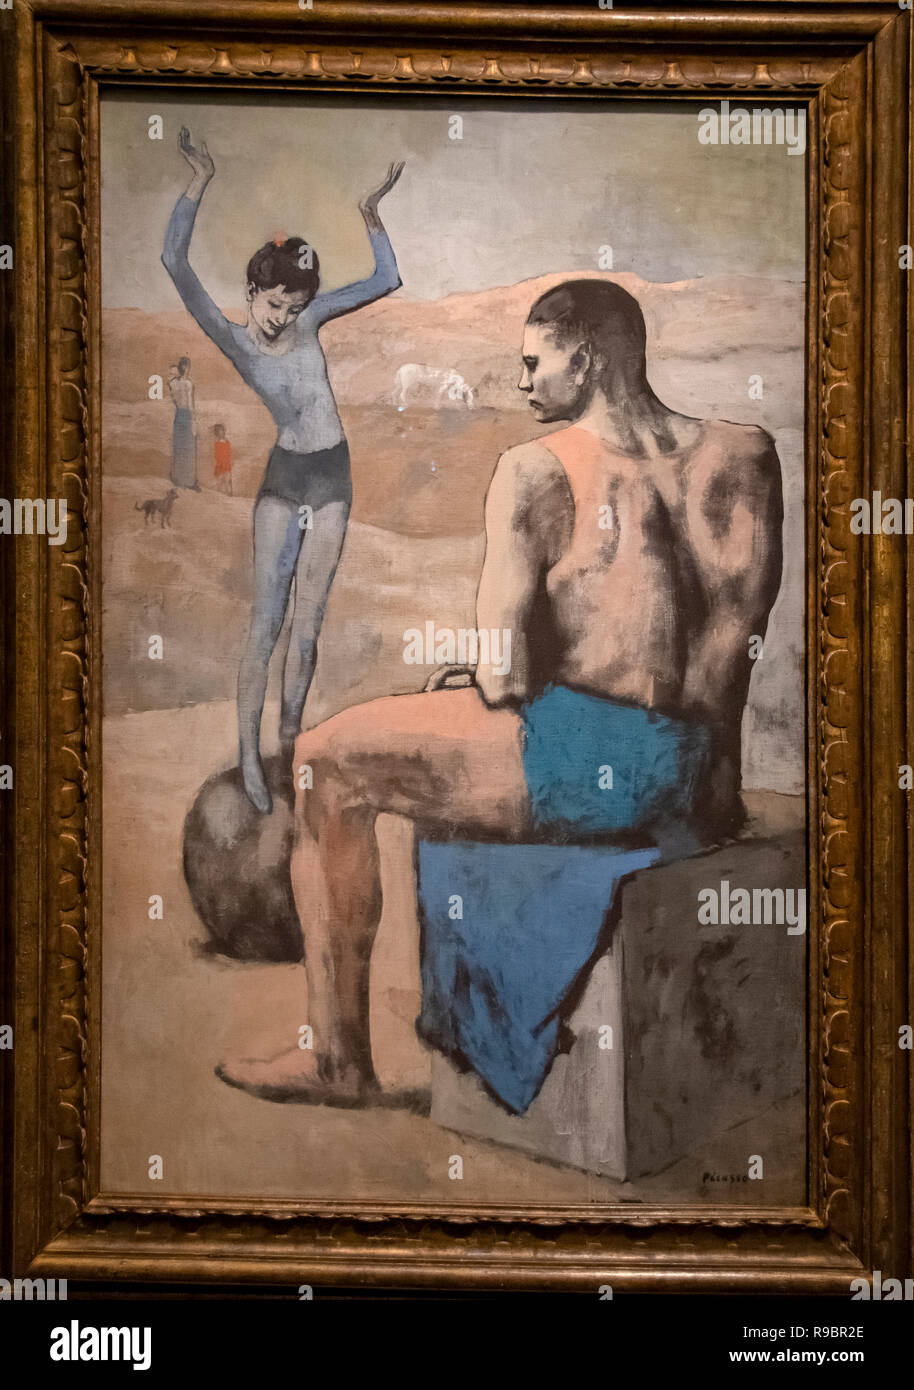 La France. Paris (75), 7e arrondissement. Musée d'Orsay. Exposition Picasso. Acrobat 'Ball', 1905 Banque D'Images